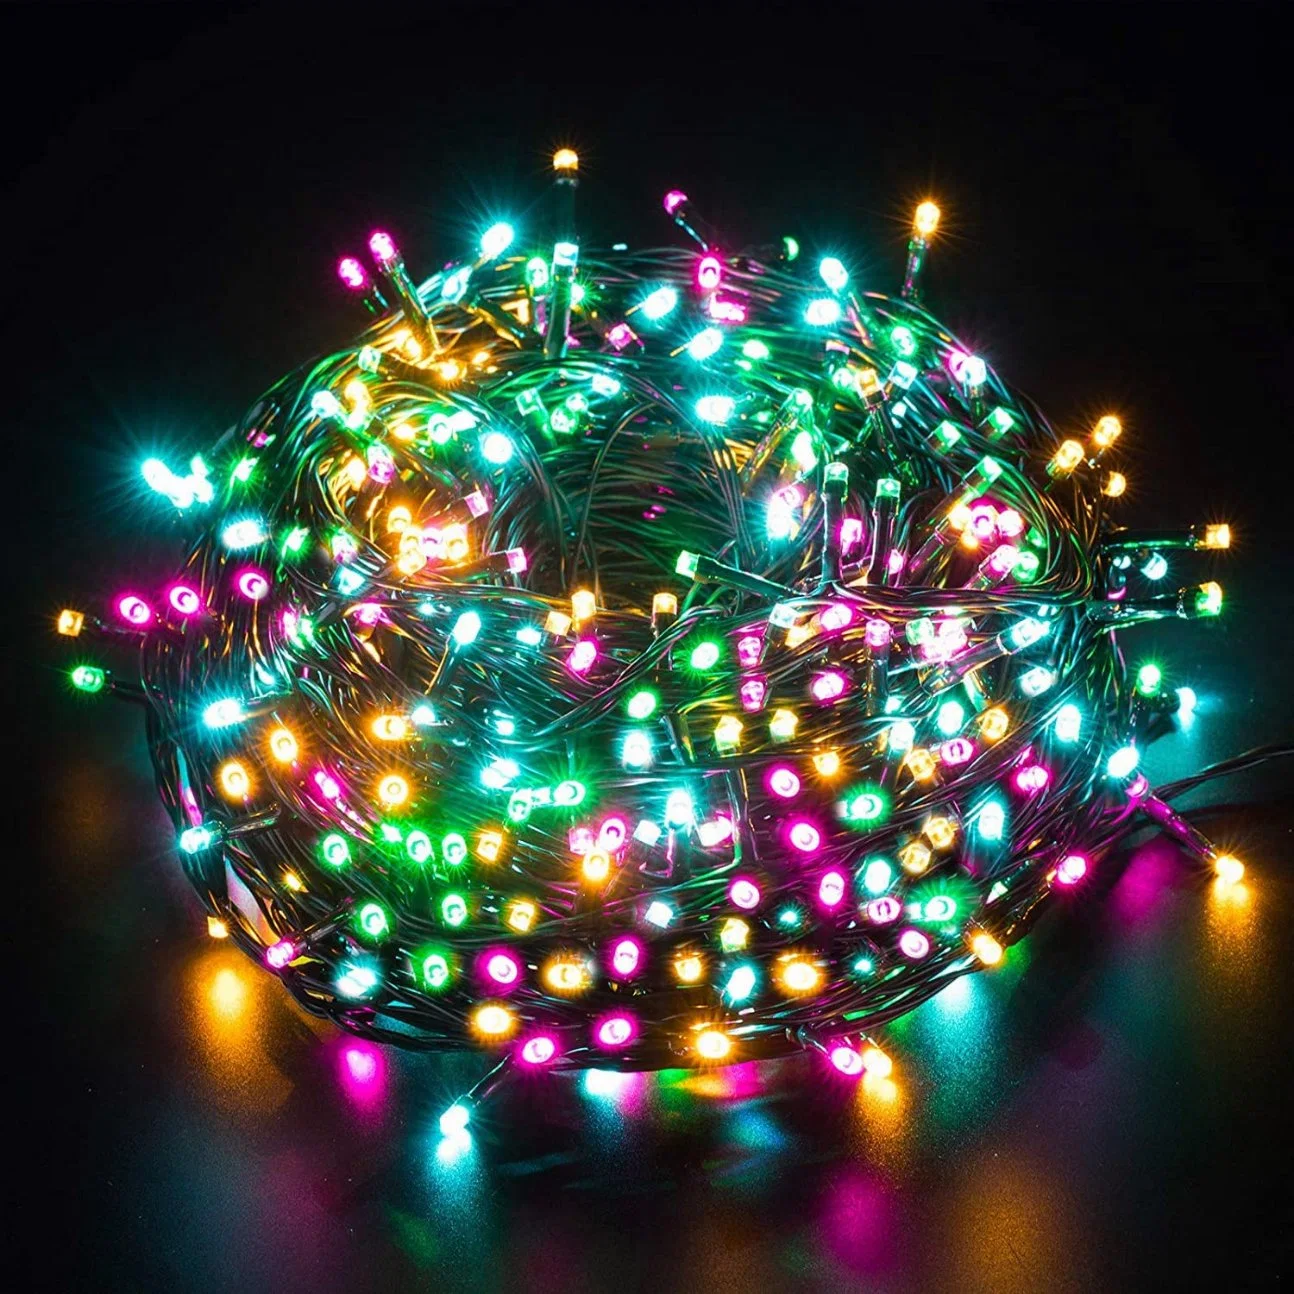 50m 500 LEDs RGB LED Holiday Decorative Flashing Fairy Christmas Light Outdoor